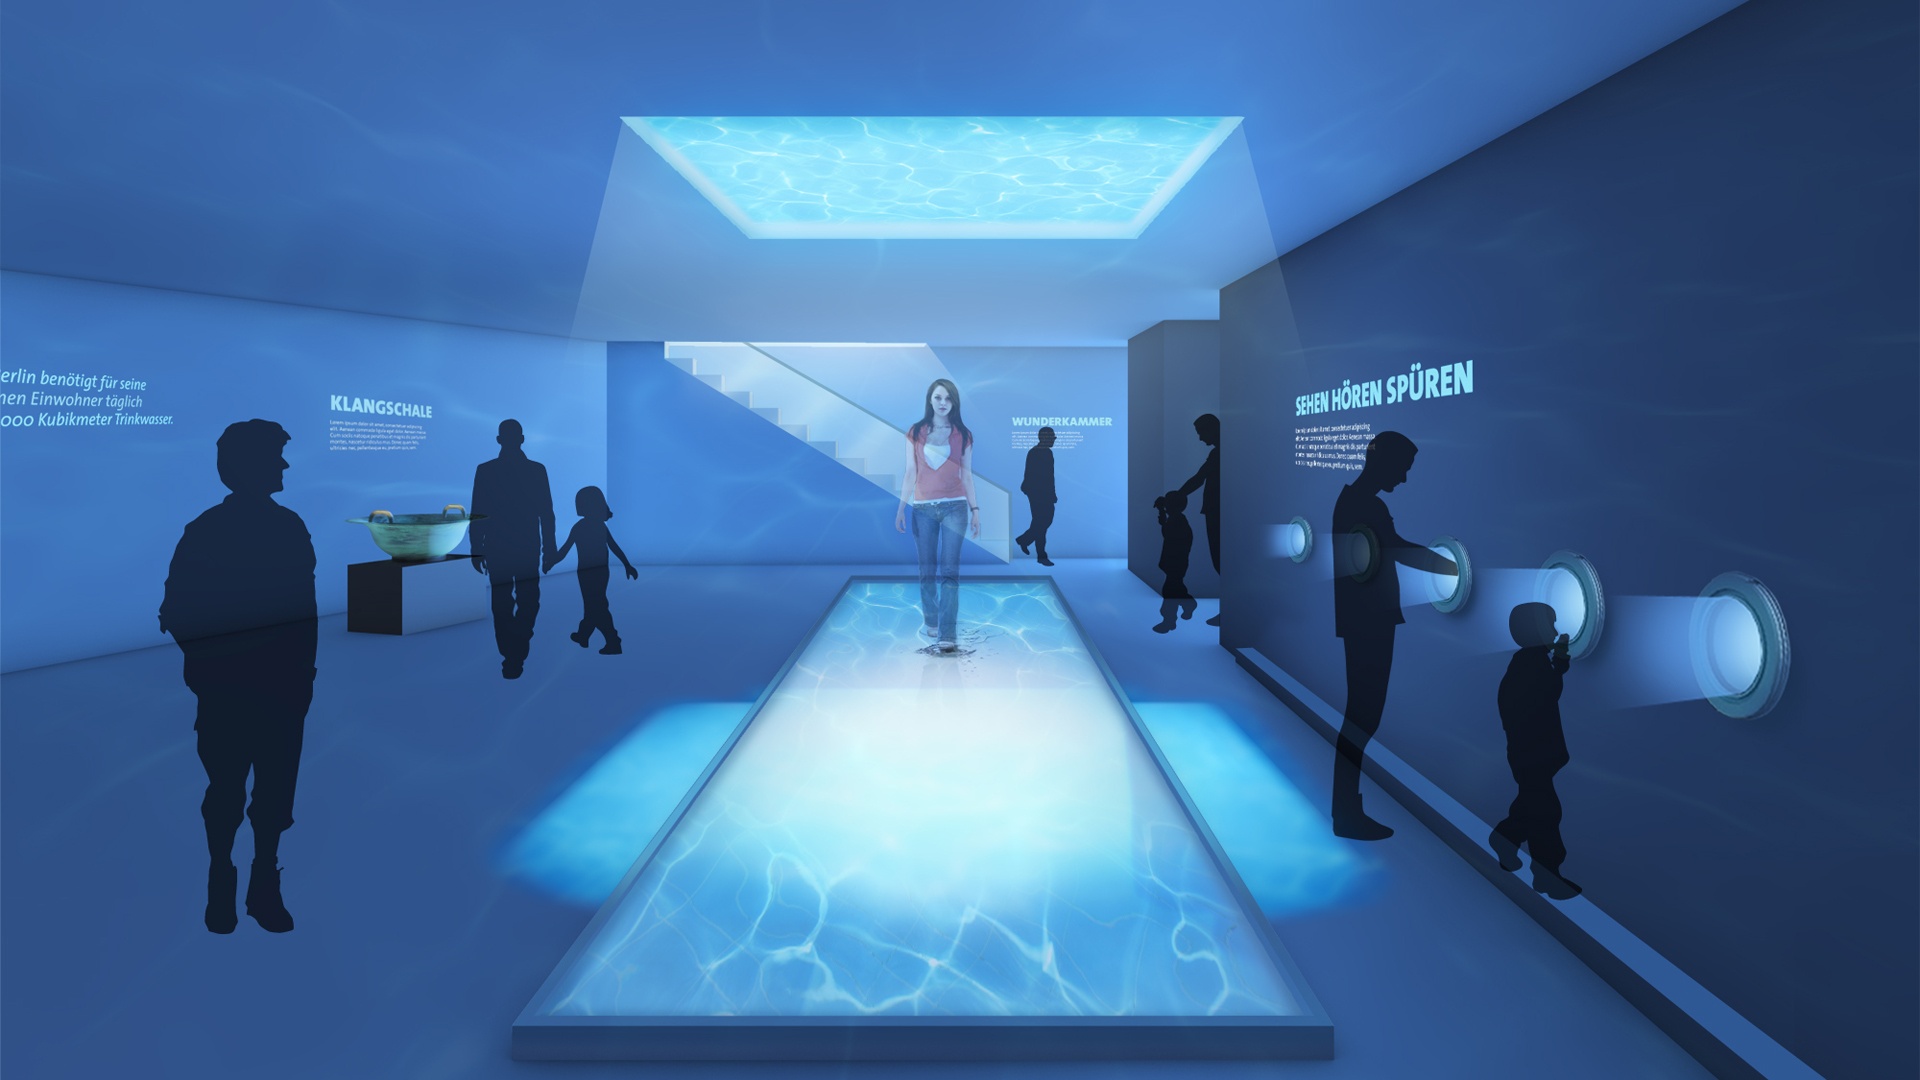 Hologramm Wunderkammer Wasserwelt Berliner Blau